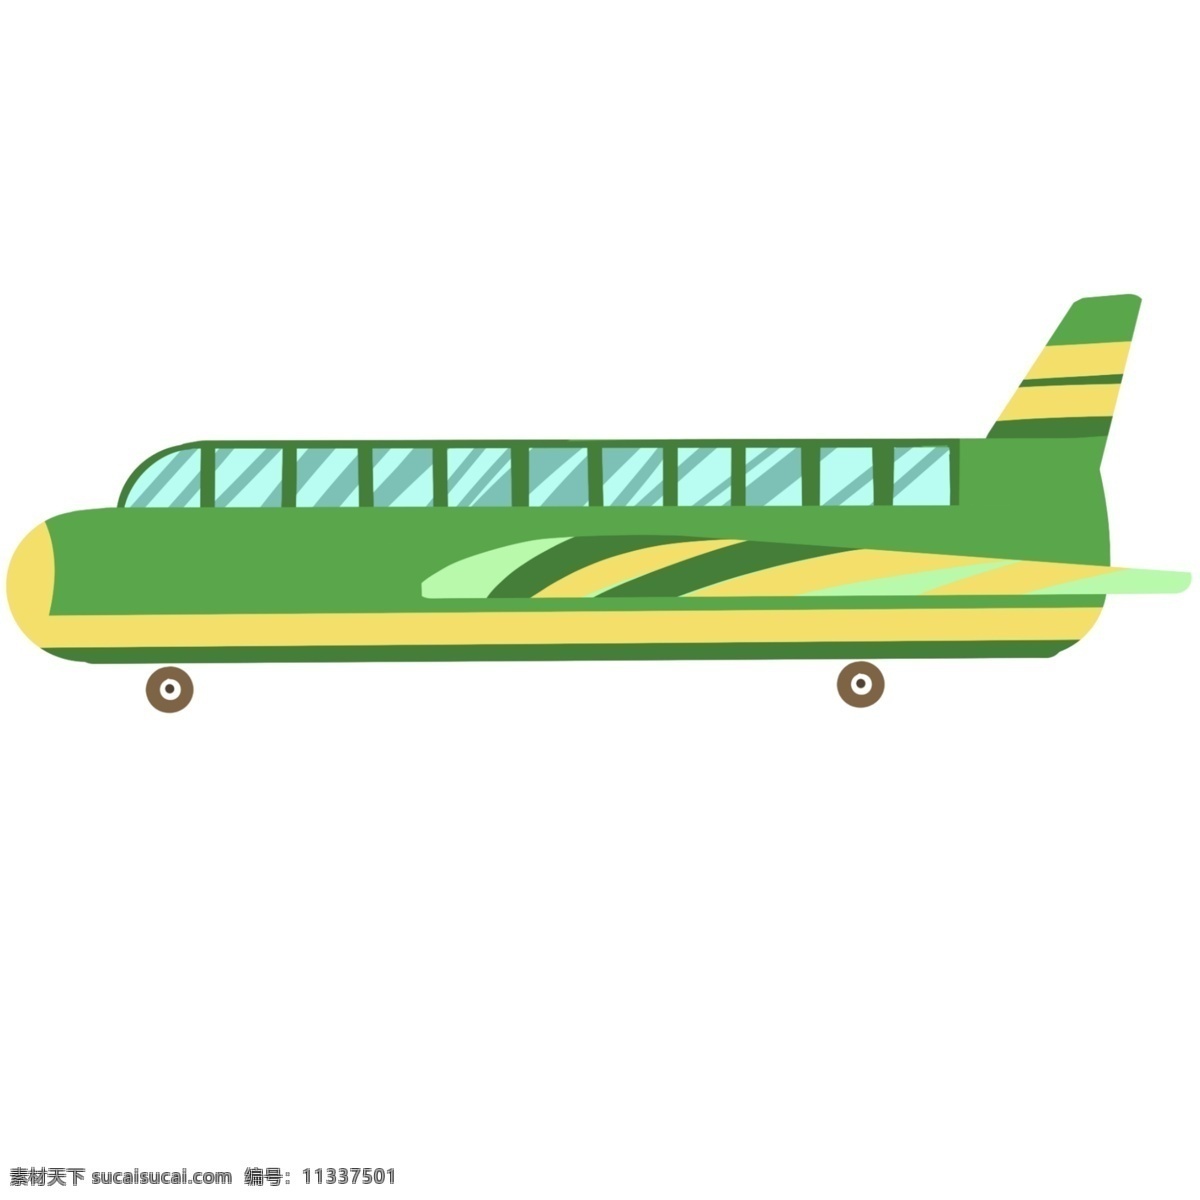 交通 飞机 客机 插画 绿色飞机车辆 公交 城市车辆 城市交通 交通工具 飞行器 飞机客机插画